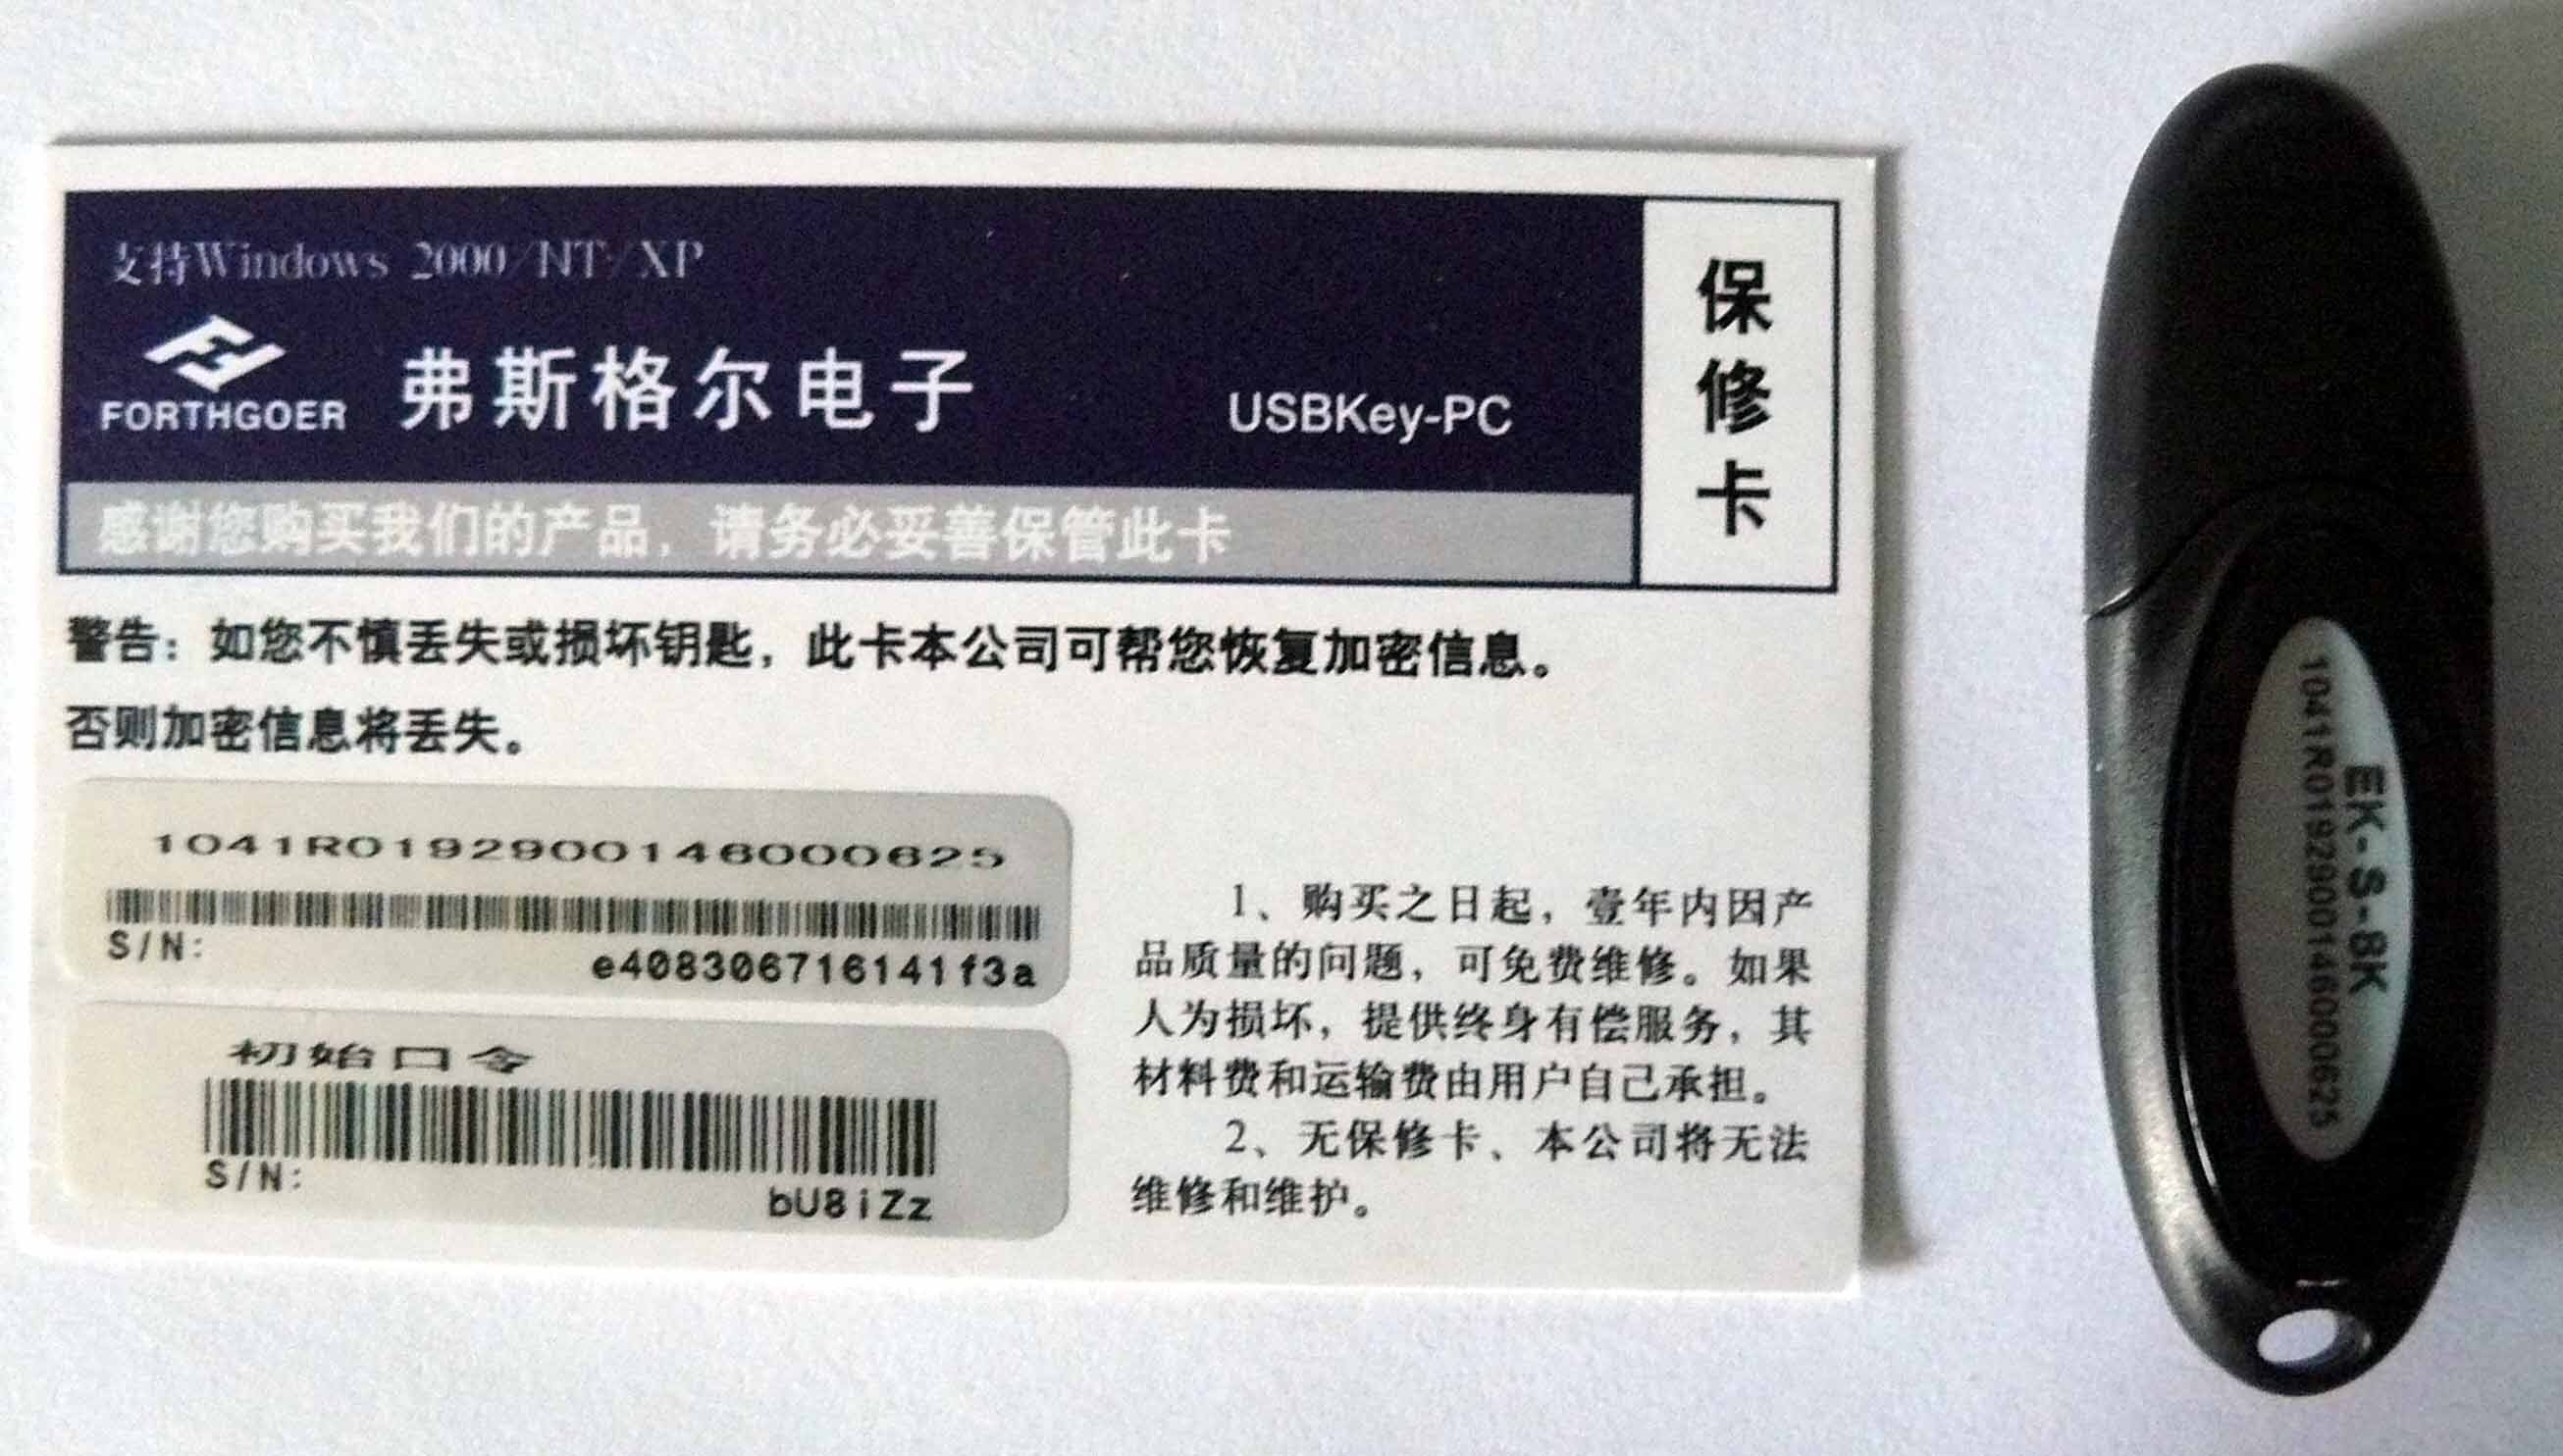 USB文件保护器